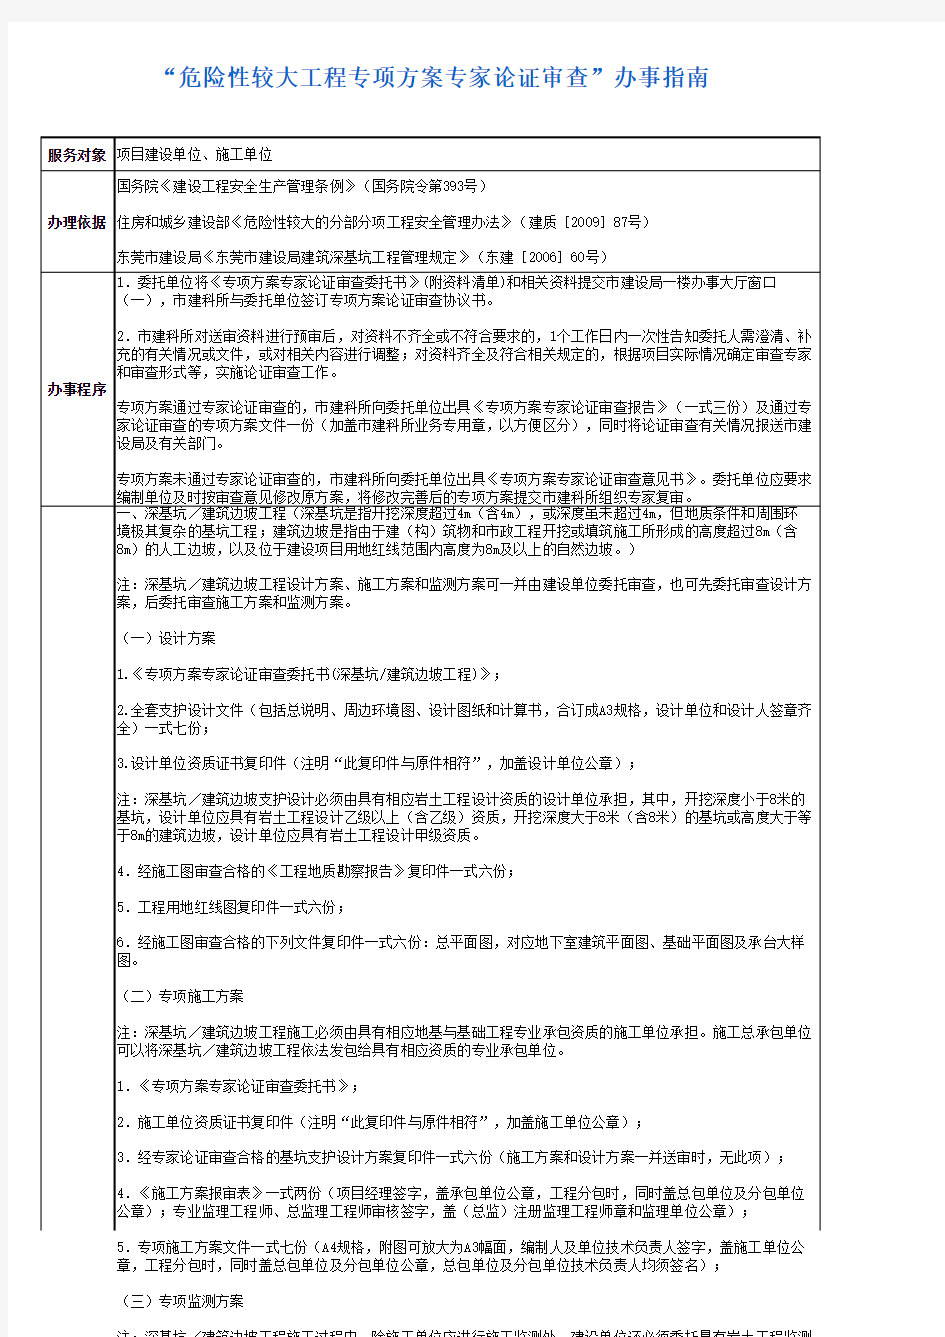 东莞市“危险性较大工程专项方案专家论证审查”办事指南